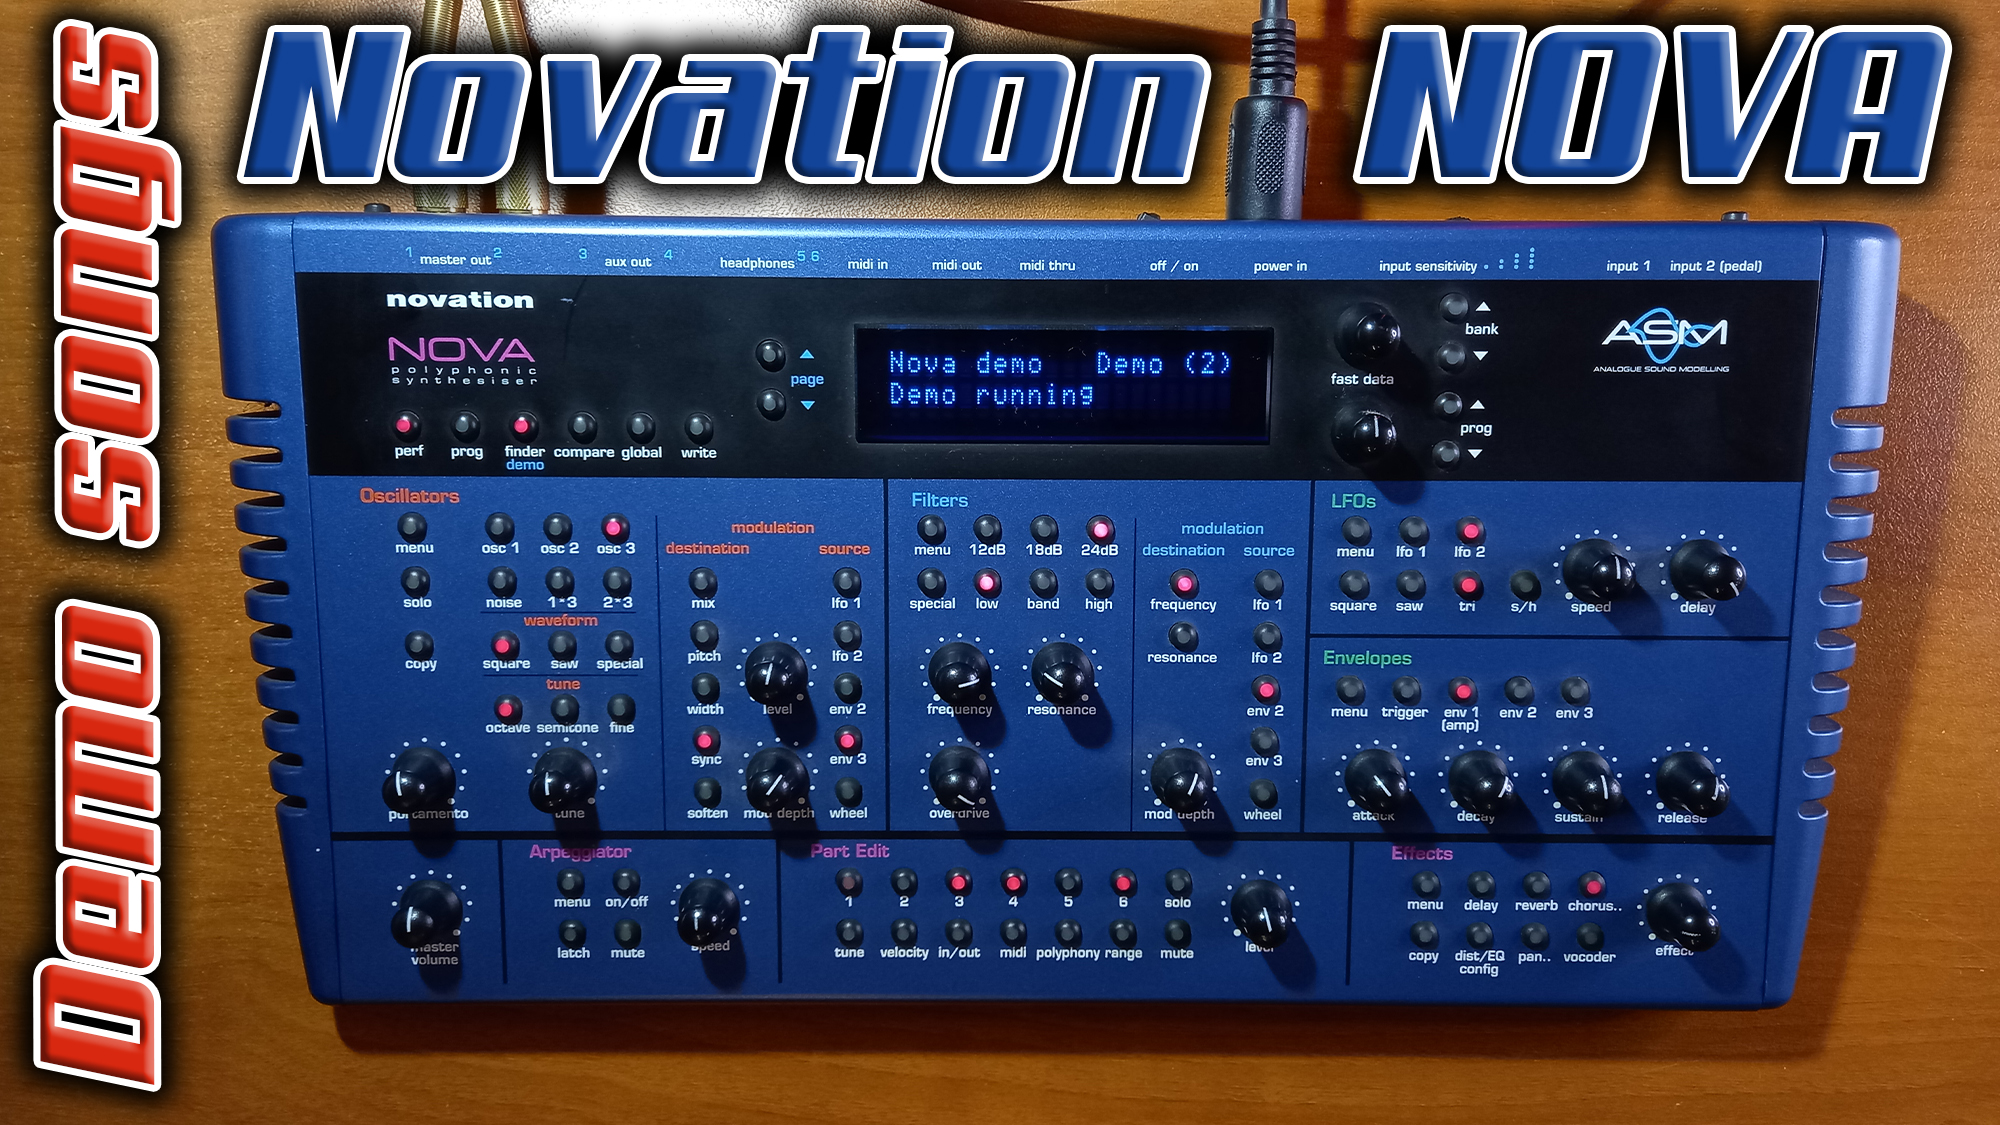 Виртуальный аналоговый синтезатор из далёкого 1999 года - Novation NOVA. Слушаем Demo songs.